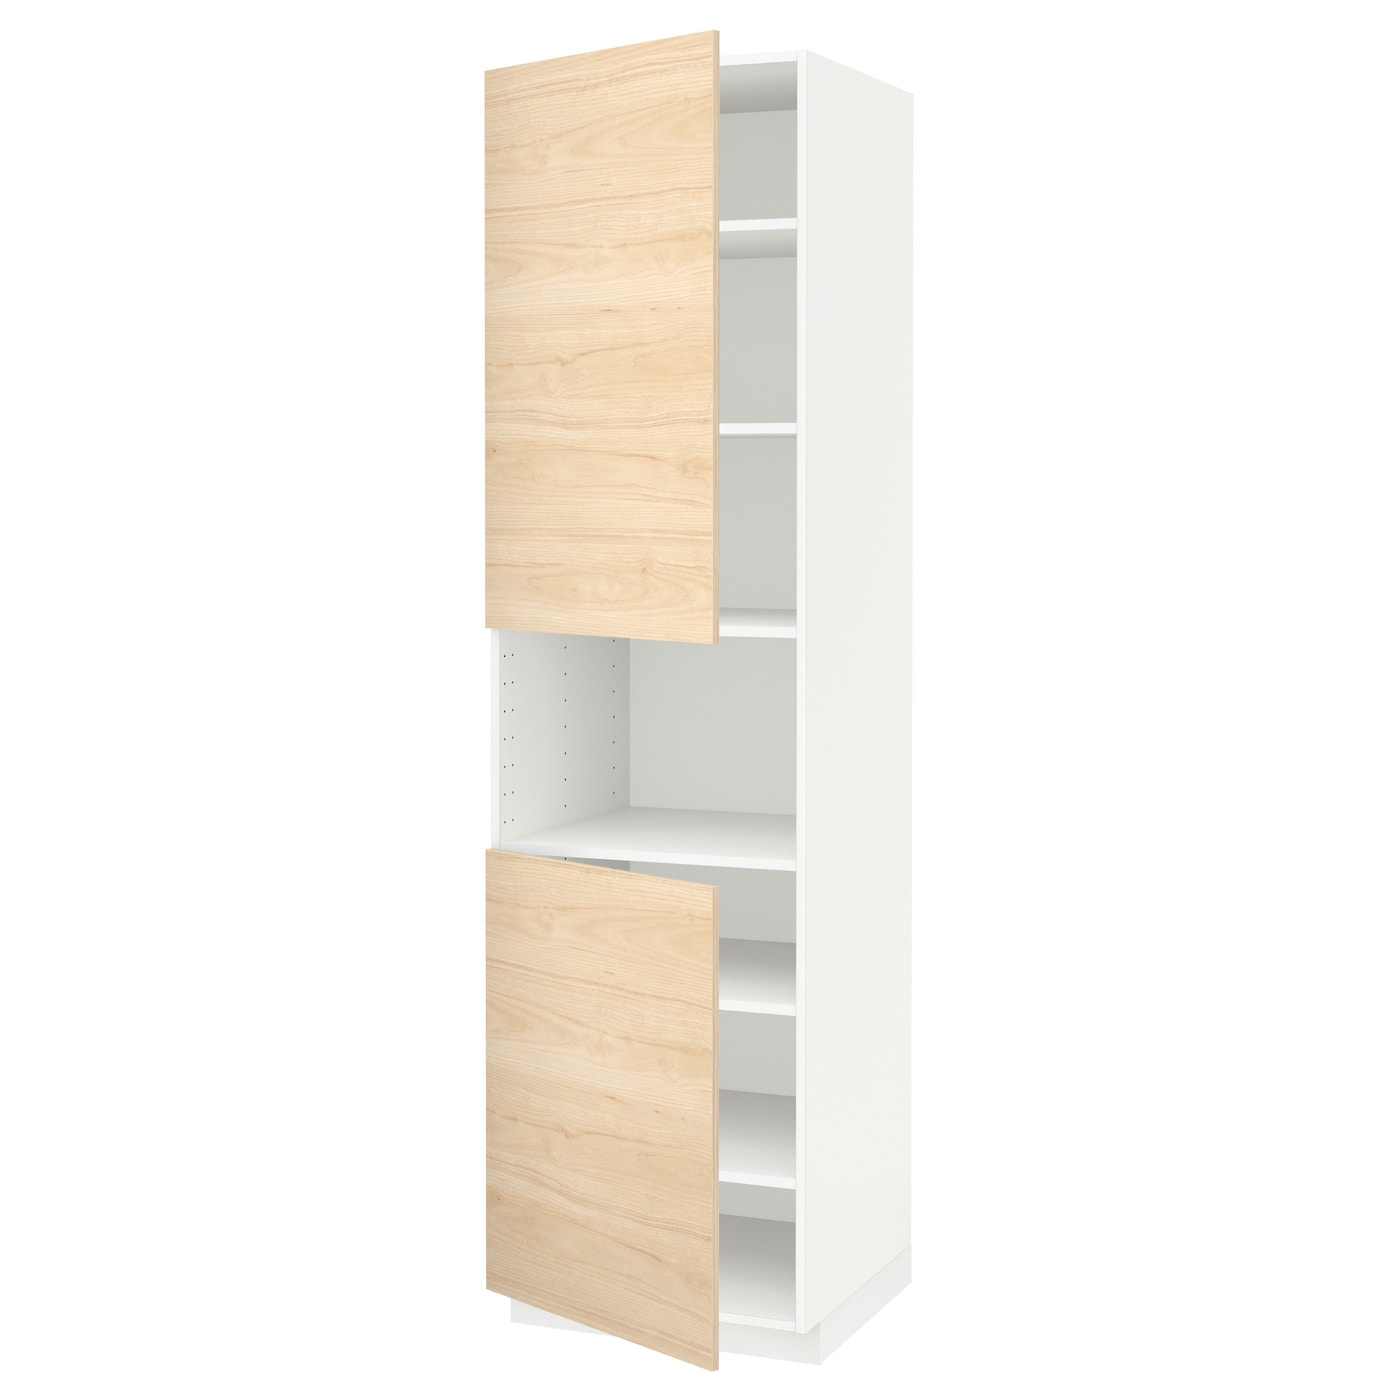 Высокий кухонный шкаф с полками - IKEA METOD/МЕТОД ИКЕА, 220х60х60 см, белый/под беленый дуб